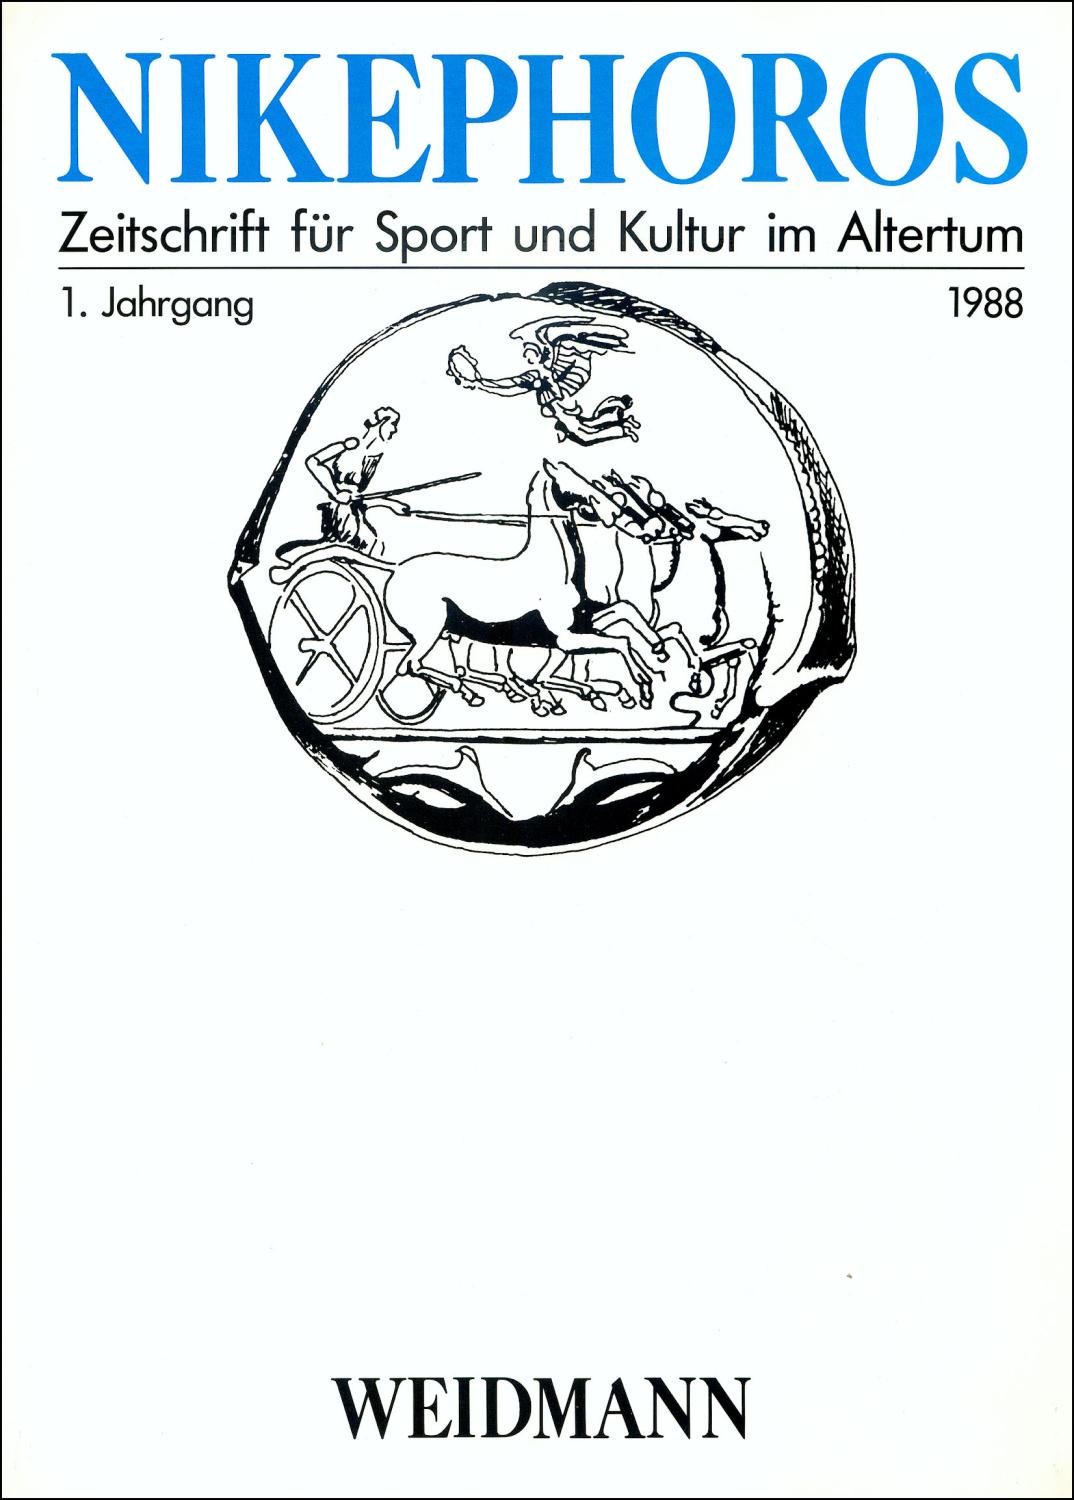 Nikephoros - Zeitschrift für Sport und Kultur im Altertum, 01. Jahrgang 1988 - Decker, Wolfgang, Ebert, Joachim, Weiler, Ingomar, Sinn, Ulrich (Hg.)